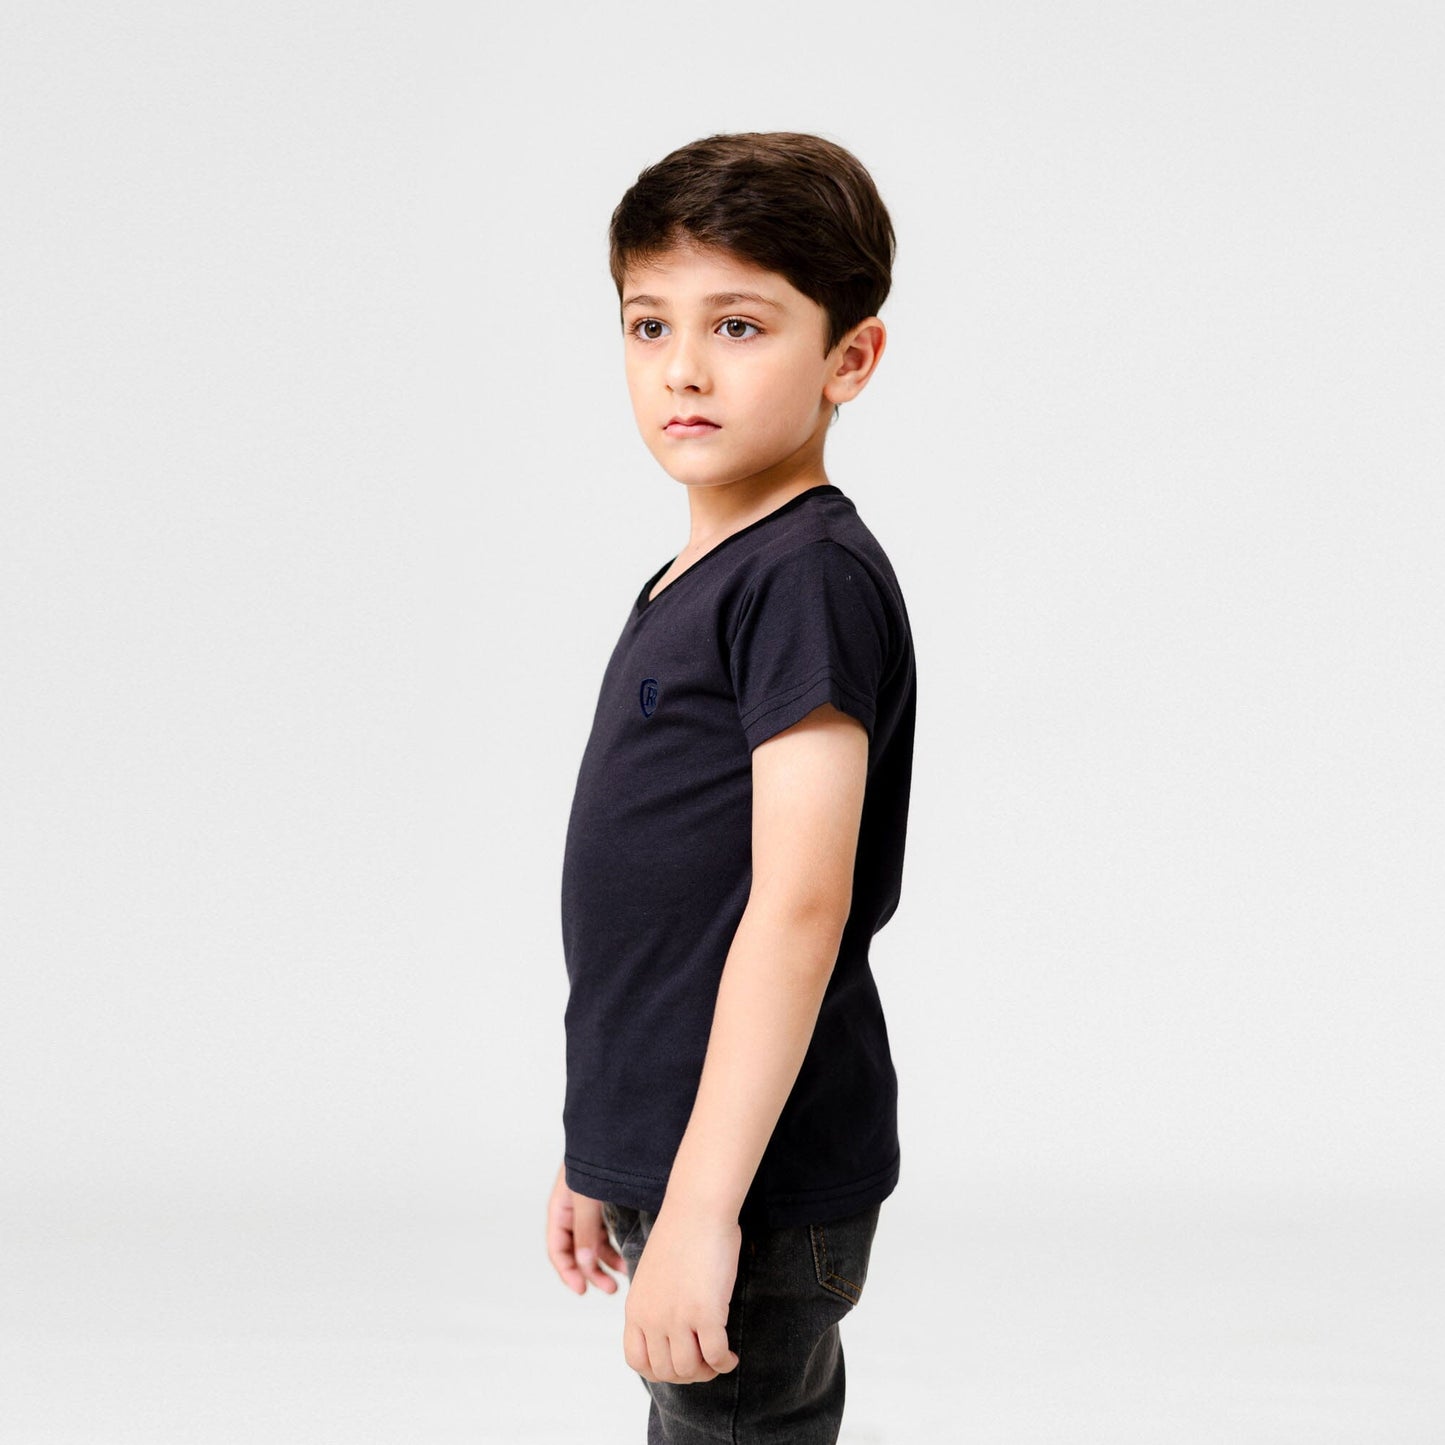 Royal Rag Boy's V-Neck T-Shirt - Classy Comfort Boy's Tee Shirt Usman Traders 